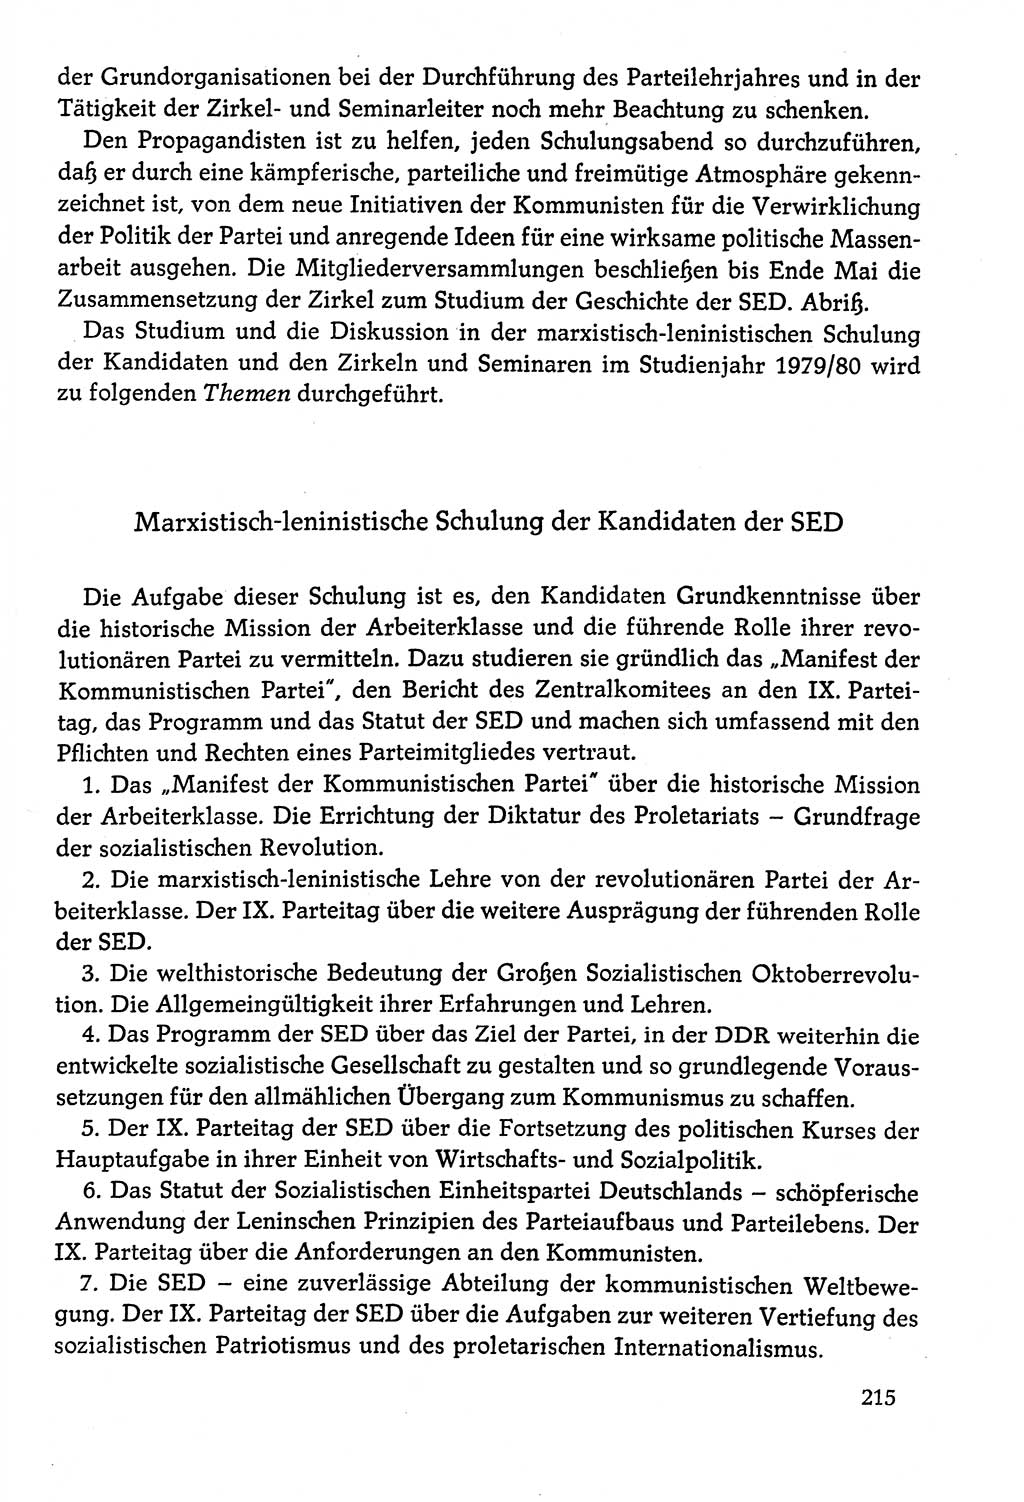 Dokumente der Sozialistischen Einheitspartei Deutschlands (SED) [Deutsche Demokratische Republik (DDR)] 1978-1979, Seite 215 (Dok. SED DDR 1978-1979, S. 215)